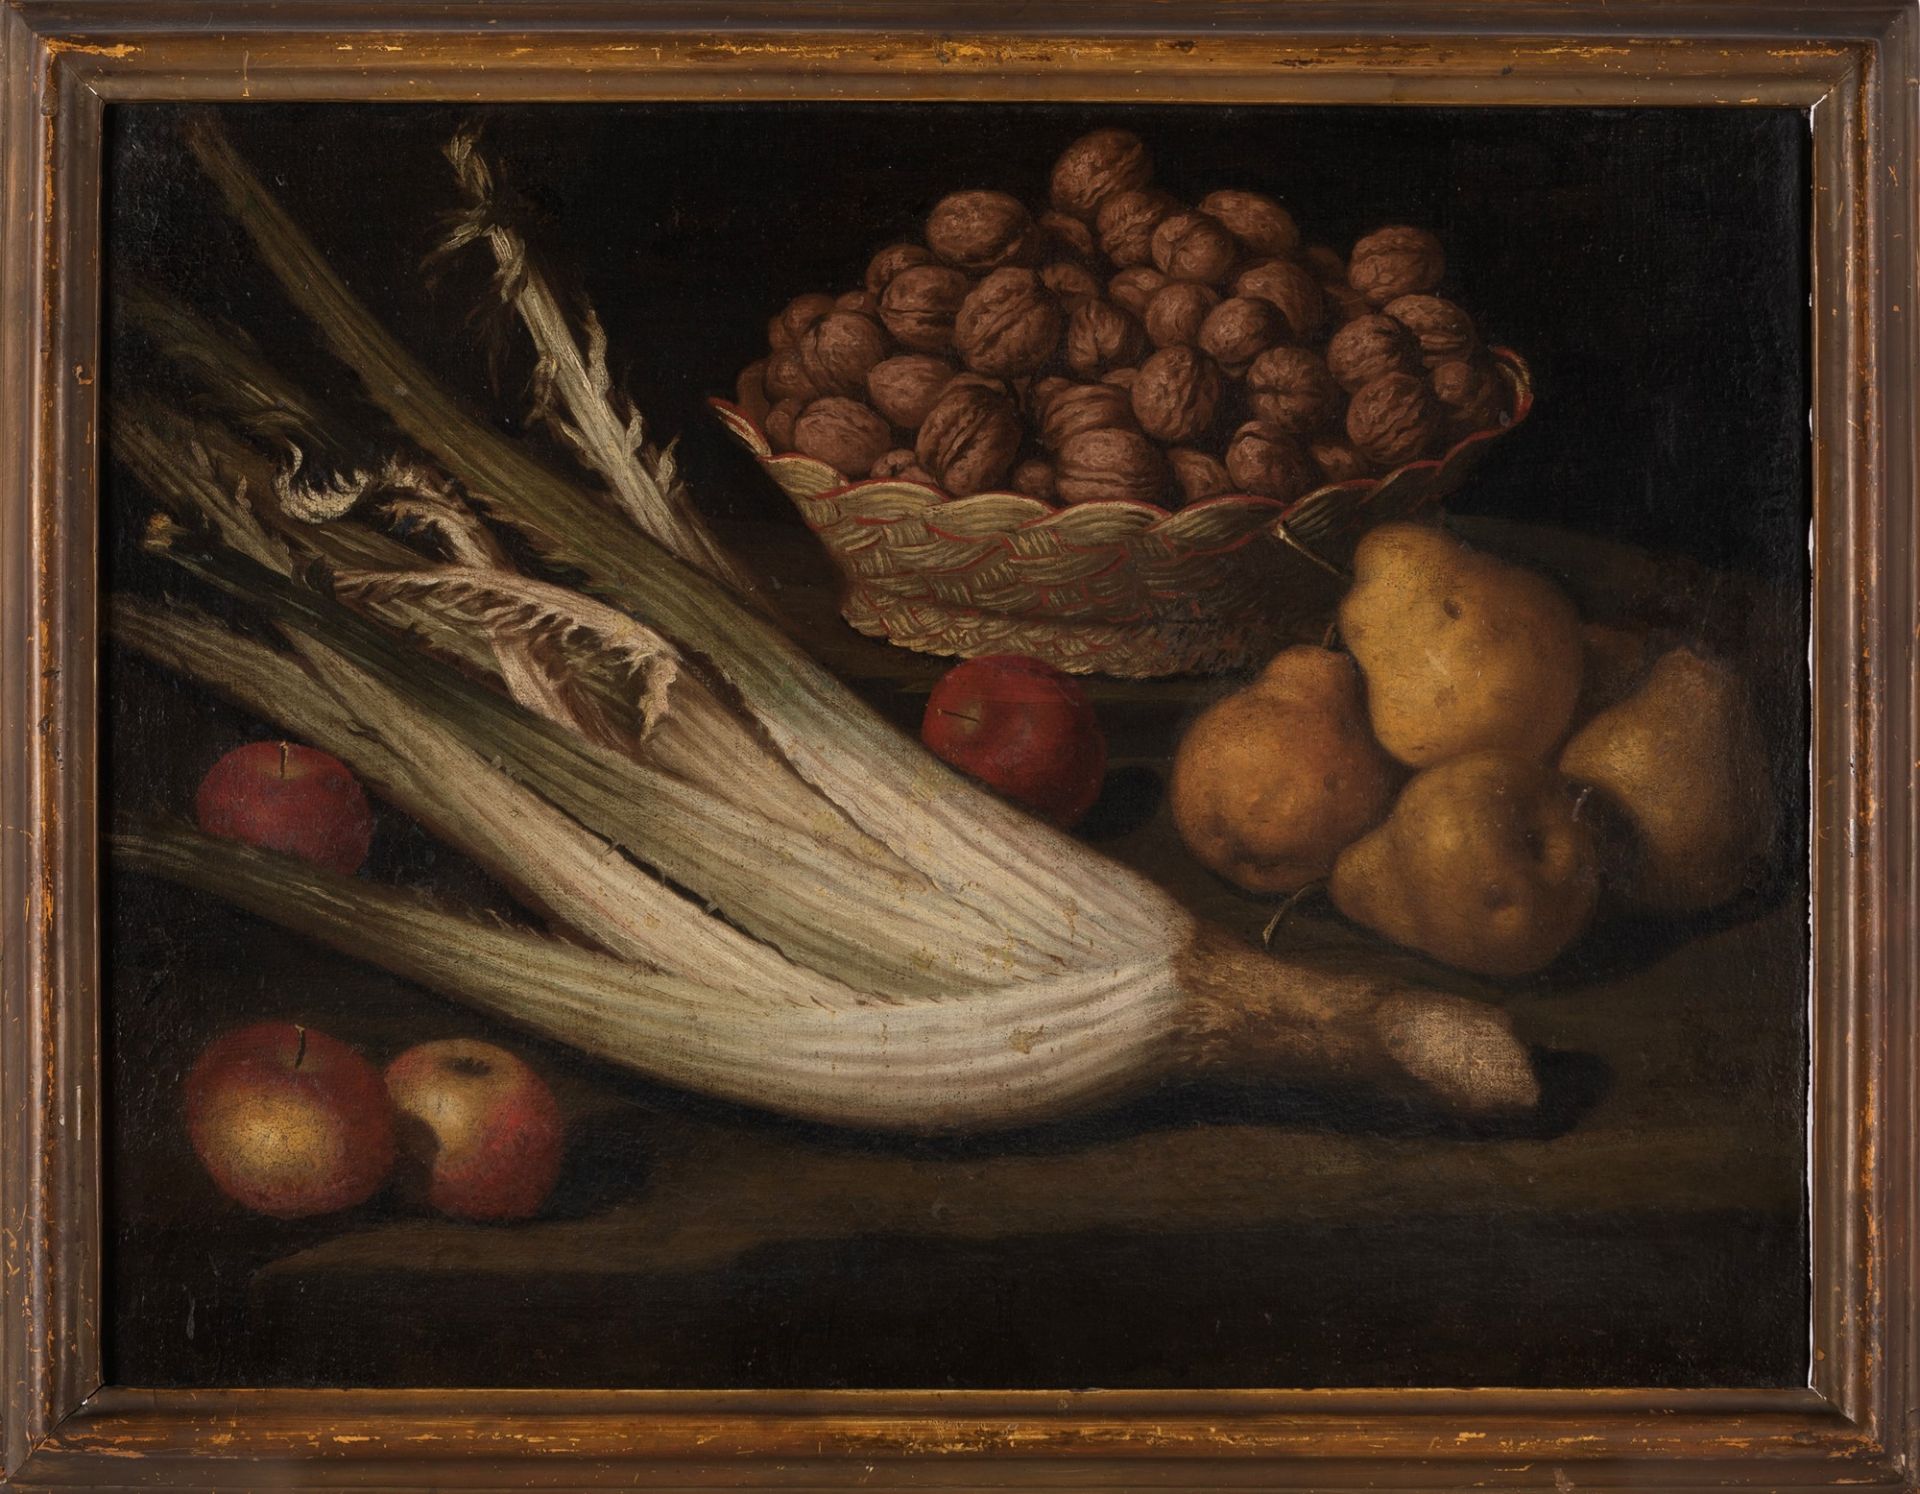 Scuola lombarda, fine del secolo XVII - inizi del secolo XVIII - Still life with pears, apples, bask - Image 2 of 5